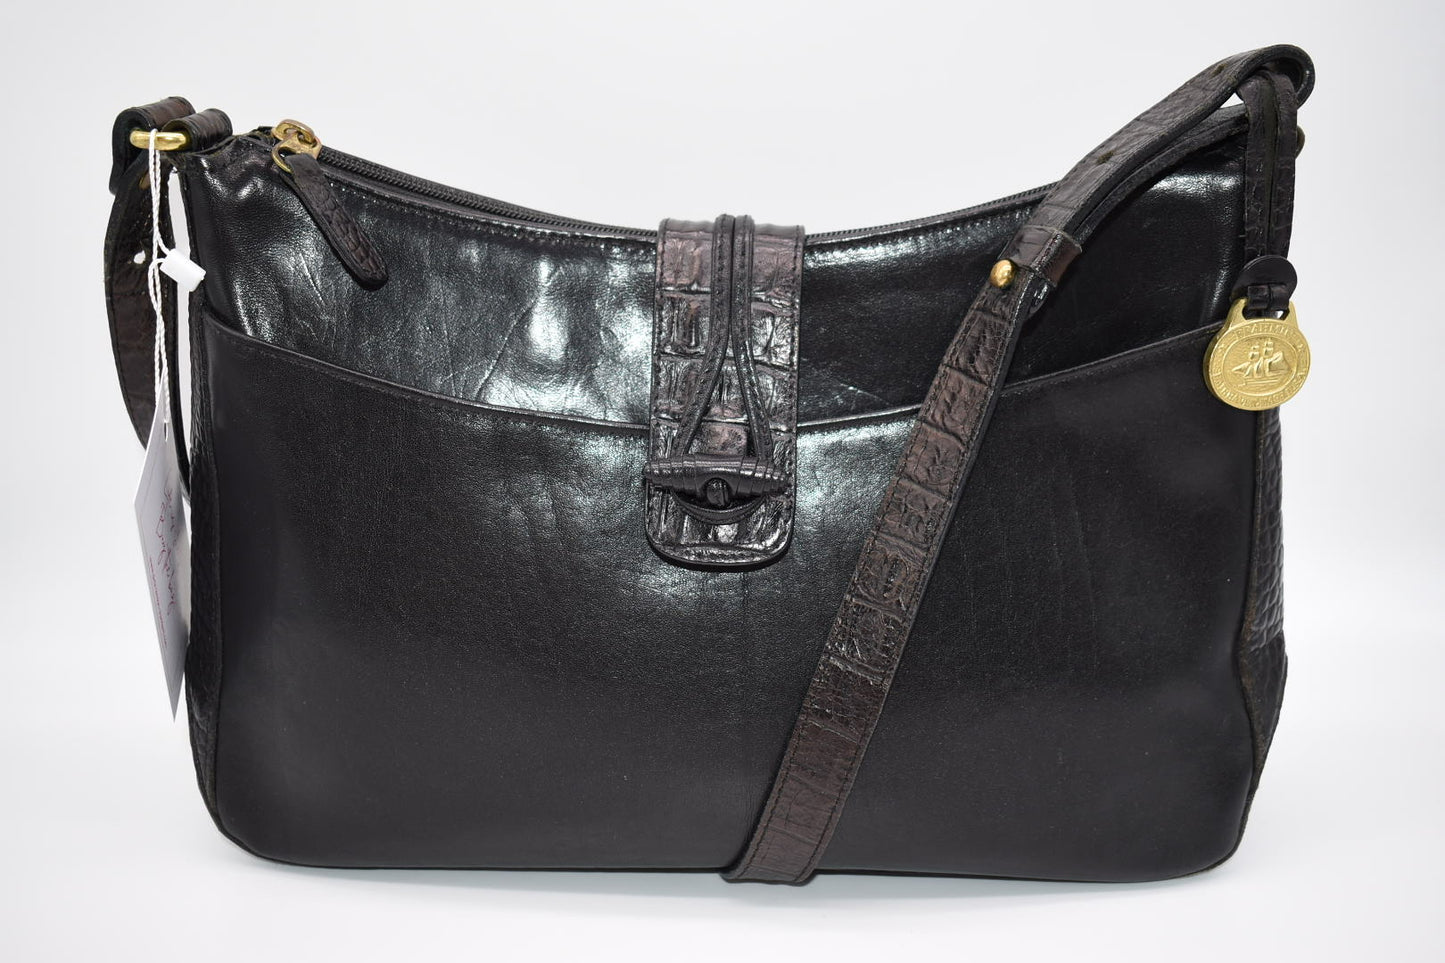 Vintage Brahmin Black Leather Shoulder Bag with Croc Embossed Trim